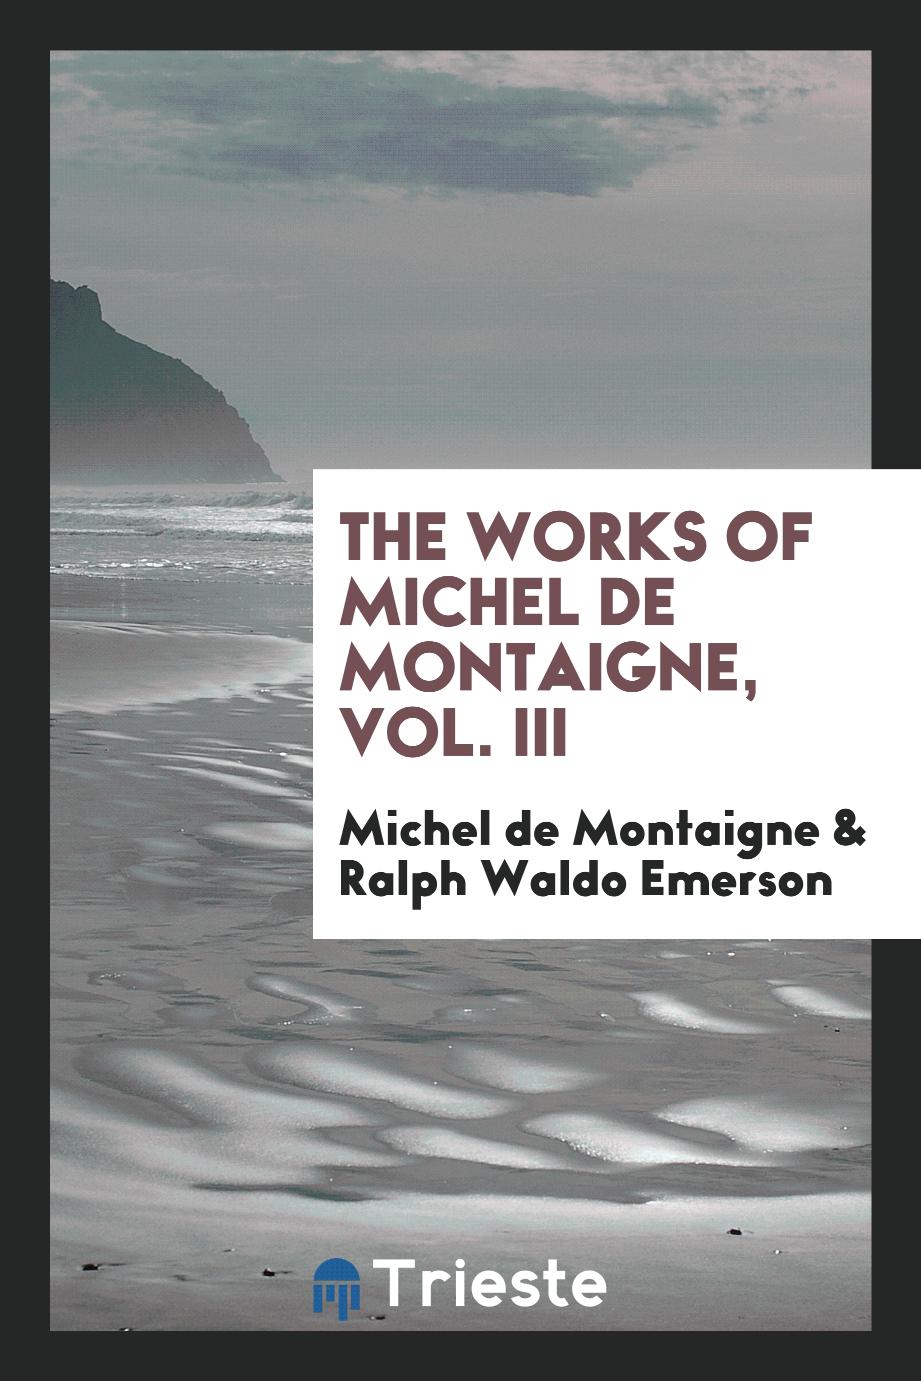 The works of Michel de Montaigne, Vol. III